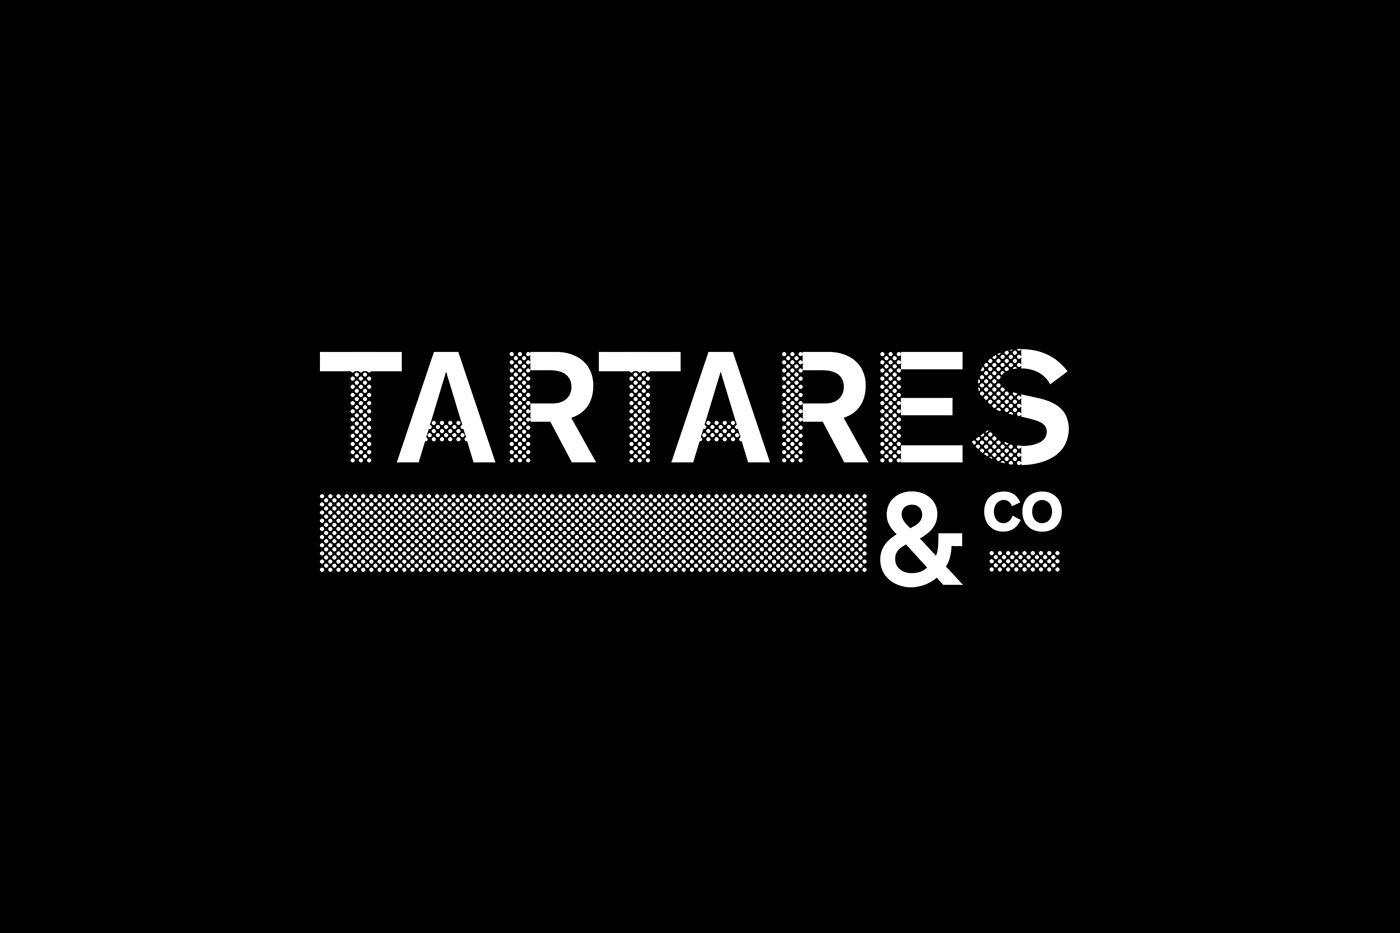 T&co tartares design graphique logo identité visuelle